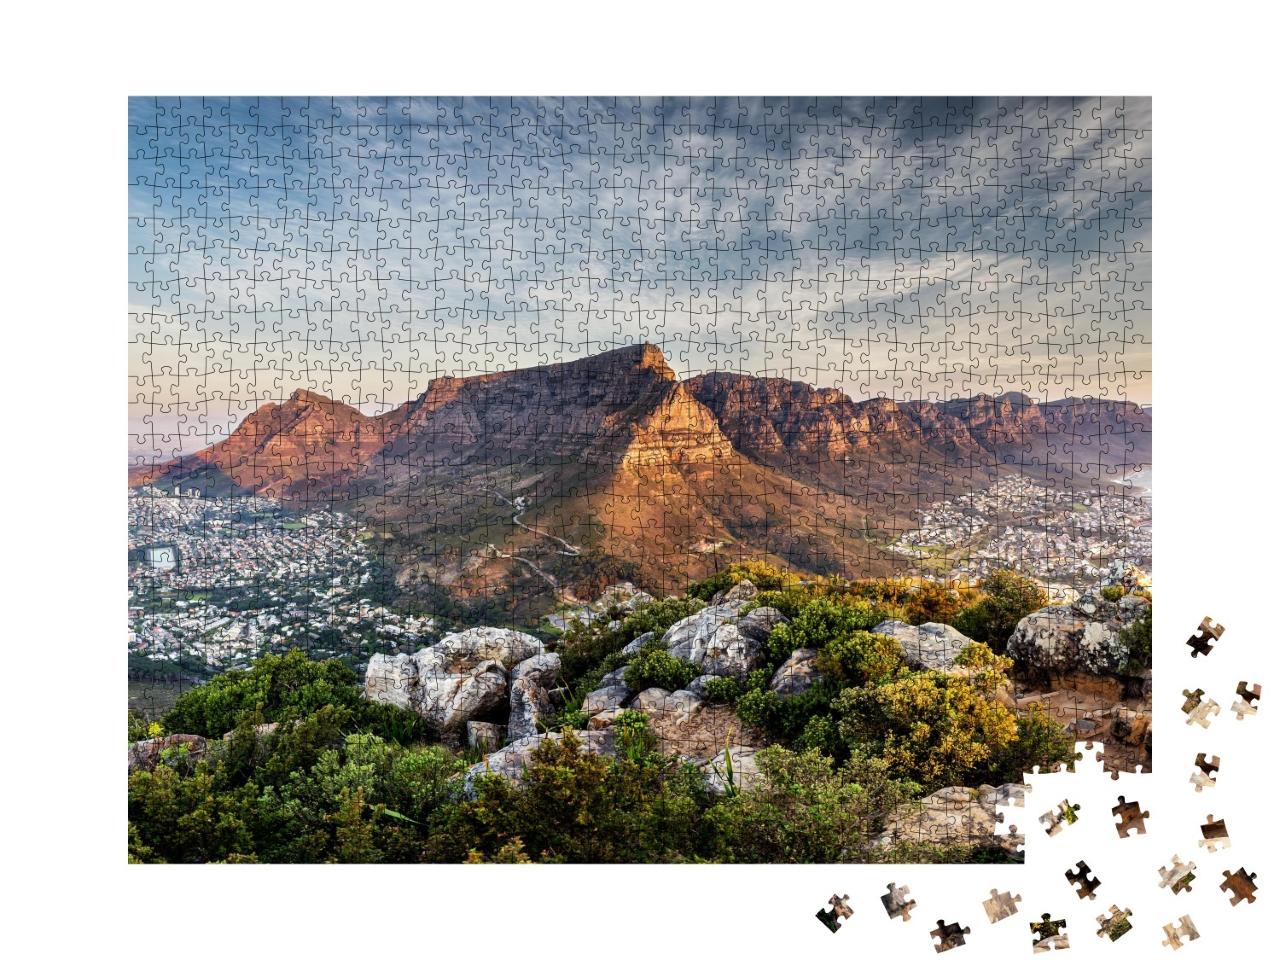 Puzzle de 1000 pièces « La montagne de la Table au coucher du soleil »